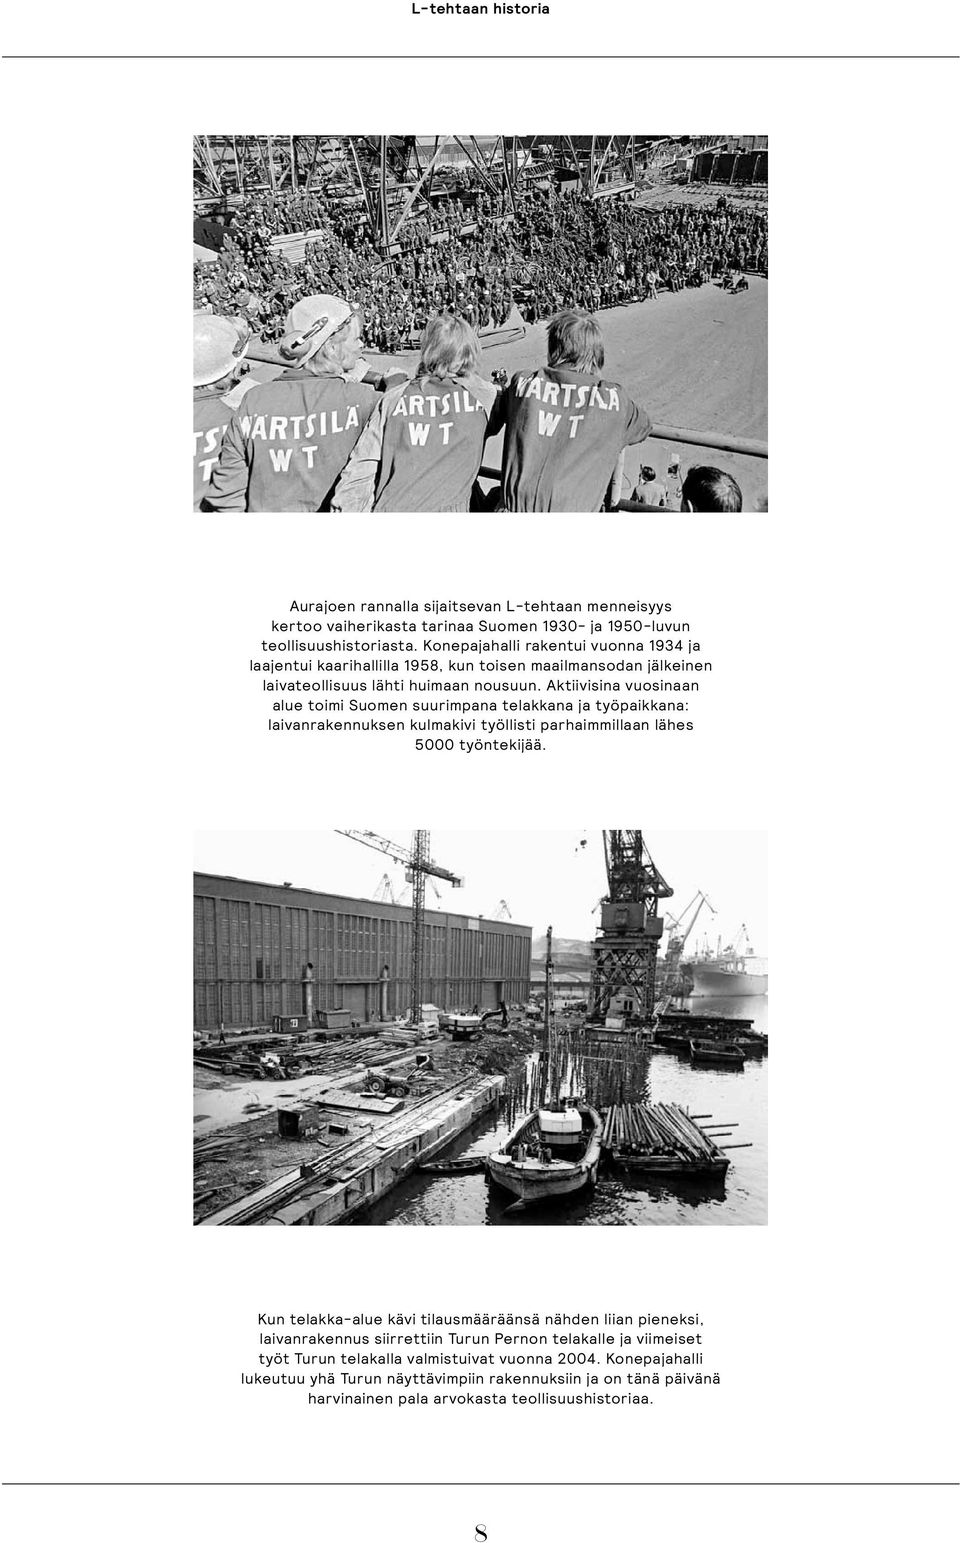 Aktiivisina vuosinaan alue toimi Suomen suurimpana telakkana ja työpaikkana: laivanrakennuksen kulmakivi työllisti parhaimmillaan lähes 5000 työntekijää.